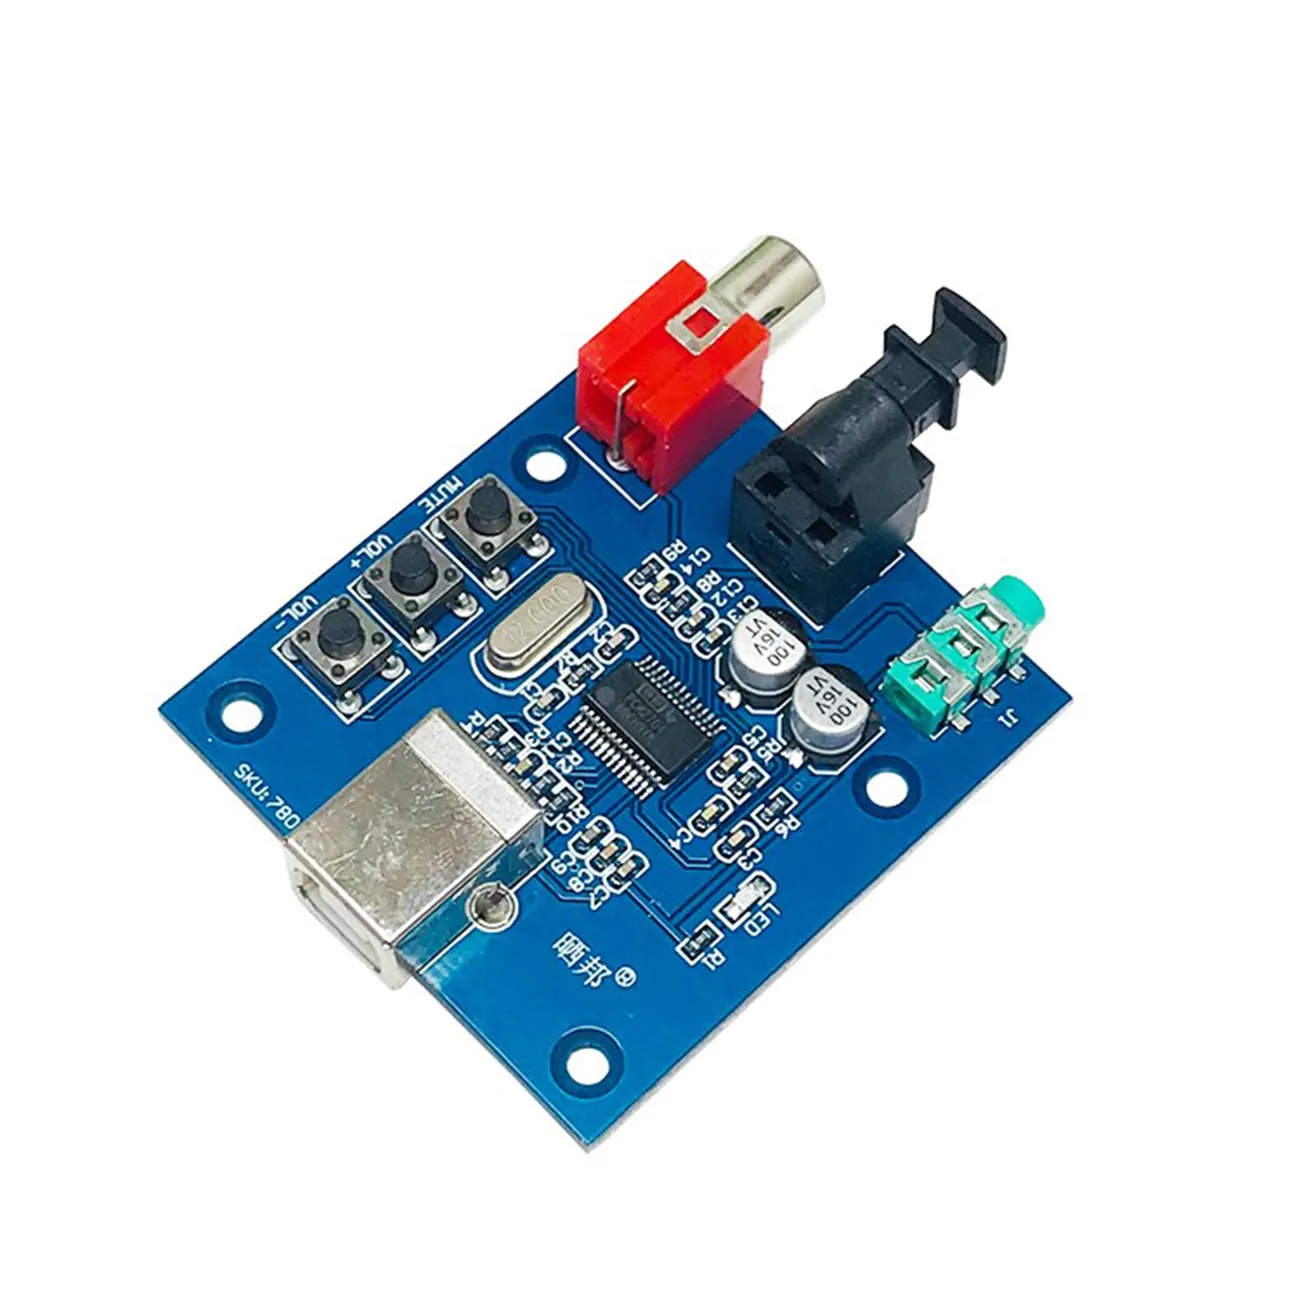 PCM2704 Audio DAC da USB a S/PDIF scheda di decodifica scheda Audio 3.5mm modulo HiFi analogico in fibra ottica coassiale senza Driver